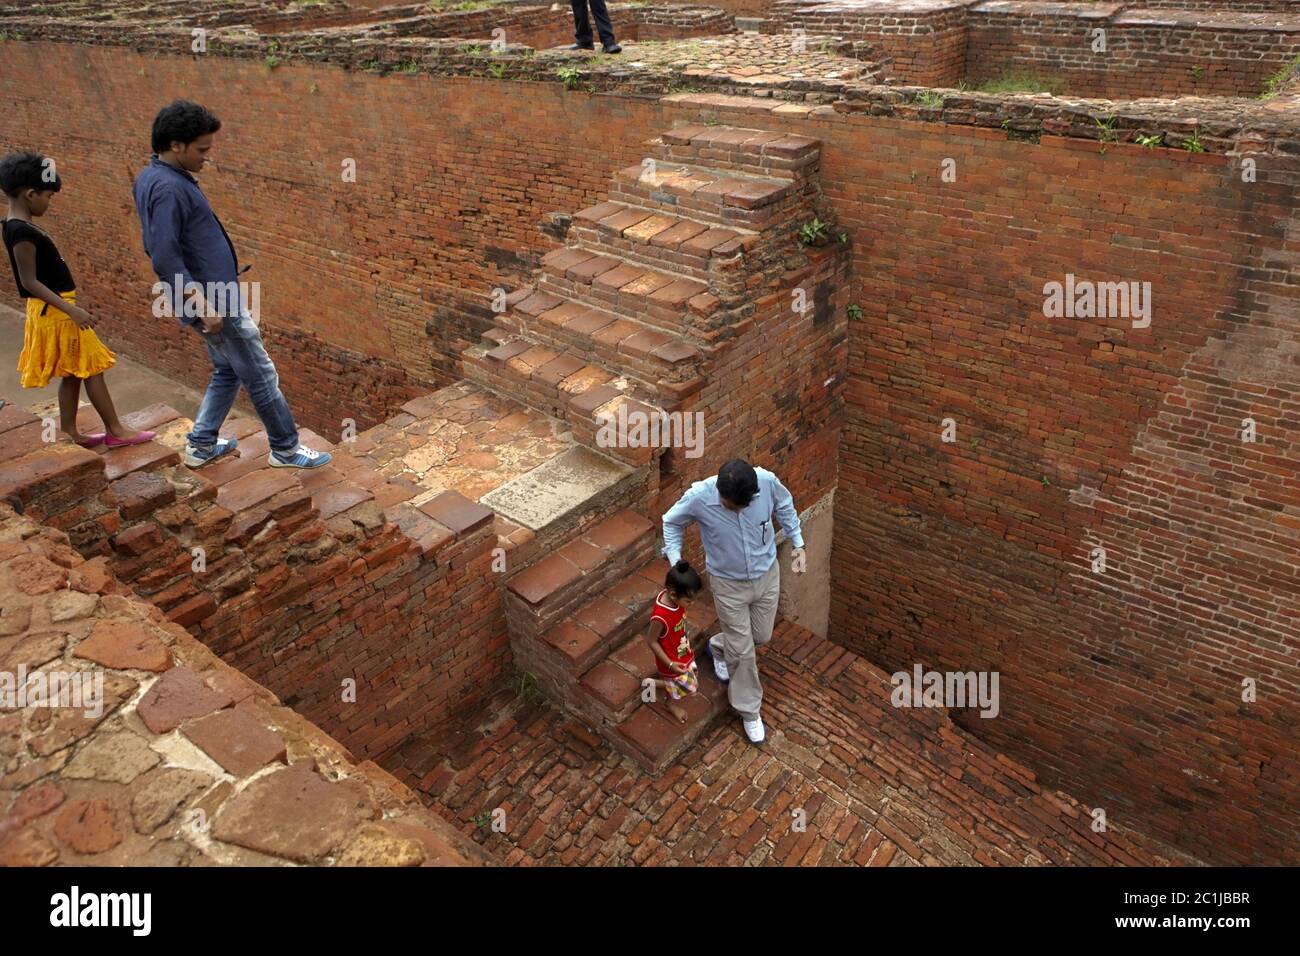 Famiglia che scende da uno dei monasteri scavati all'interno dell'antico complesso universitario buddista di Nalanda a Nalanda, Bihar, India. Foto Stock